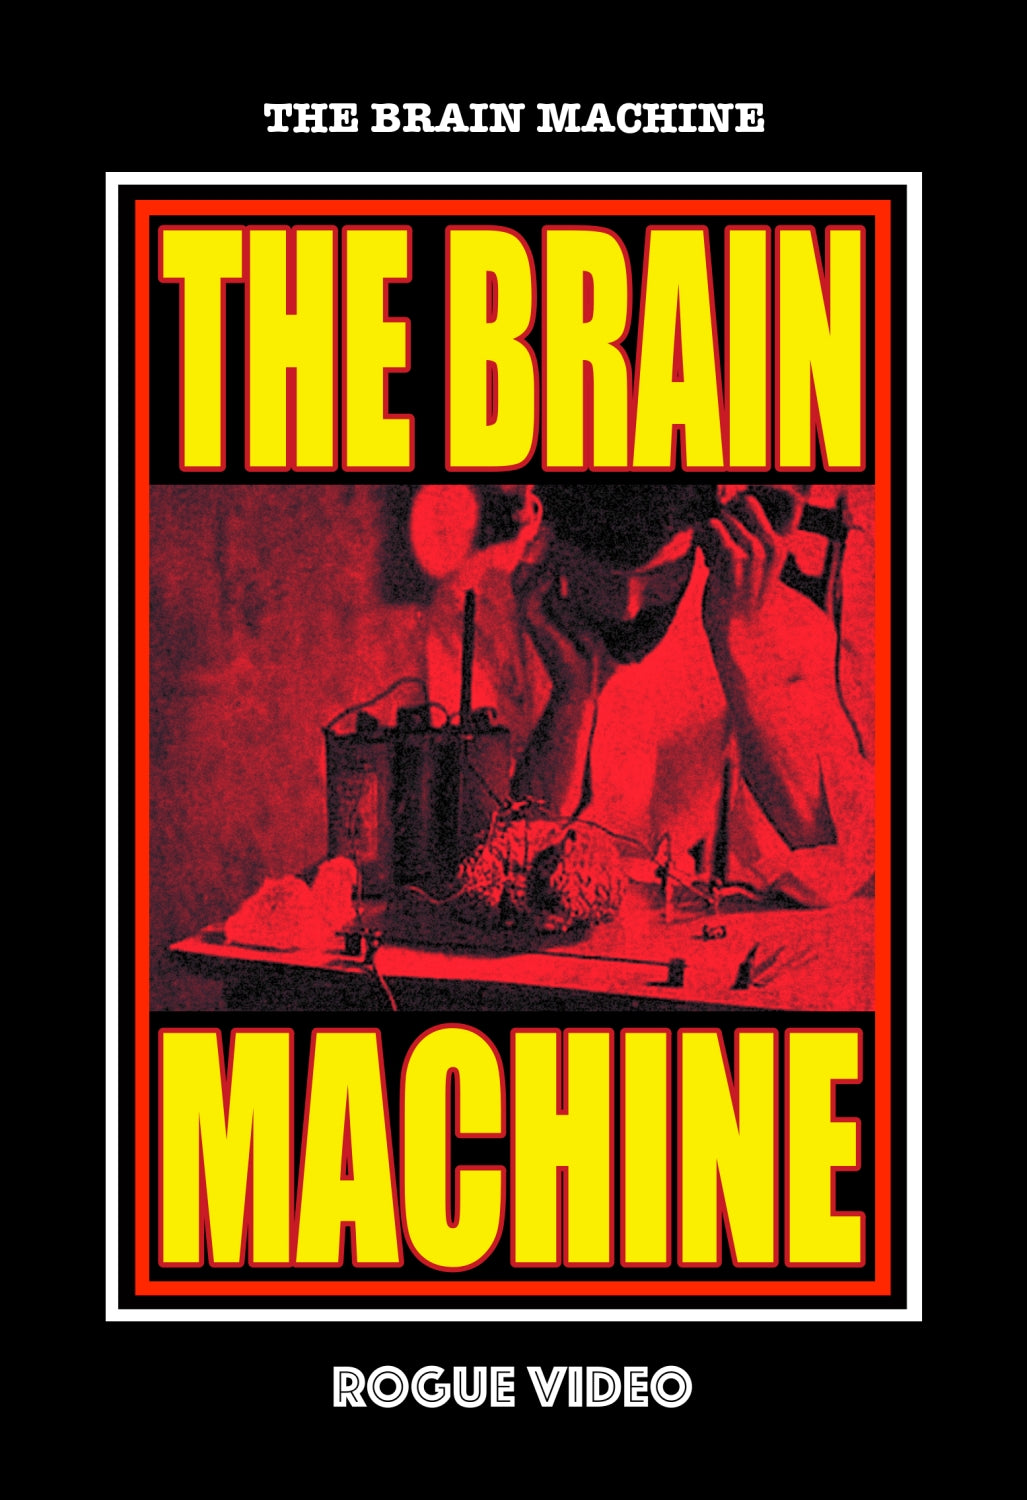 THE BRAIN MACHINE (1972)